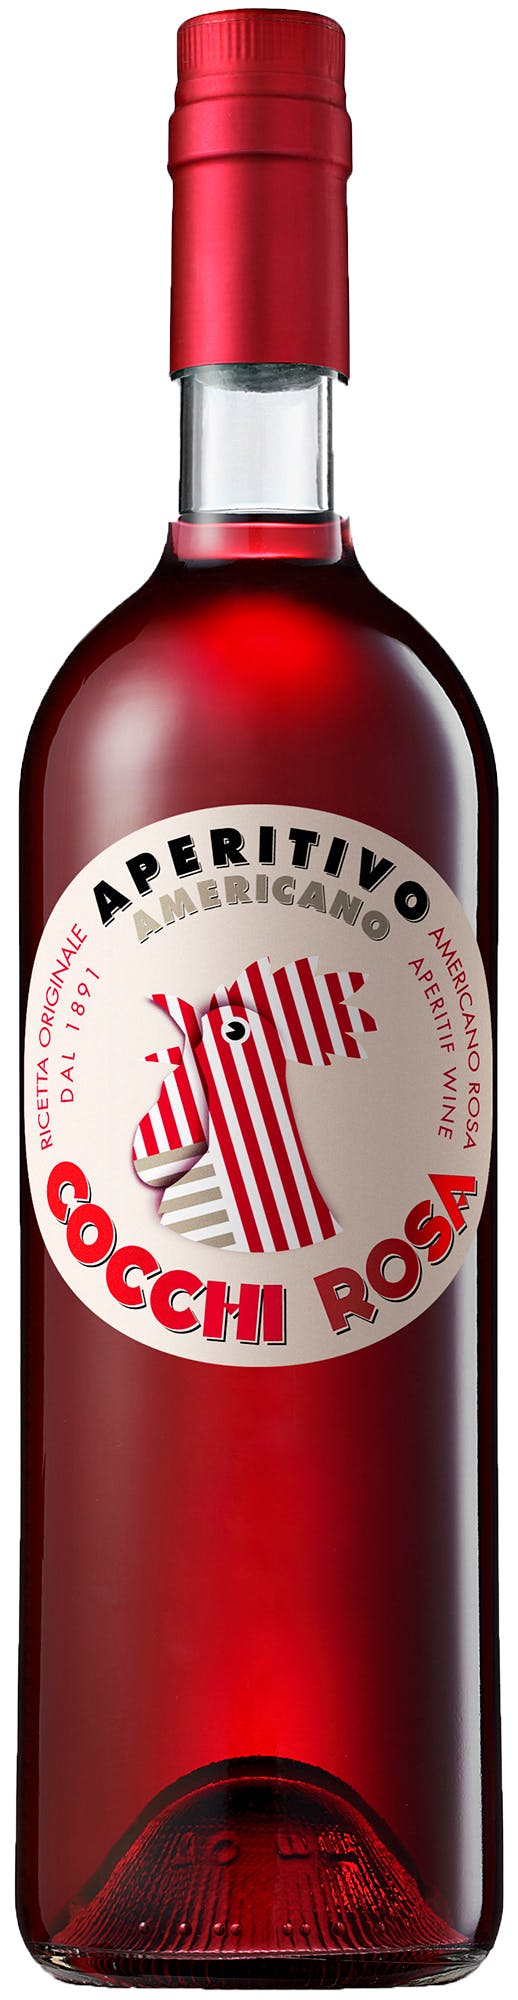 Apéritif - Argonaut Wine & Liquor